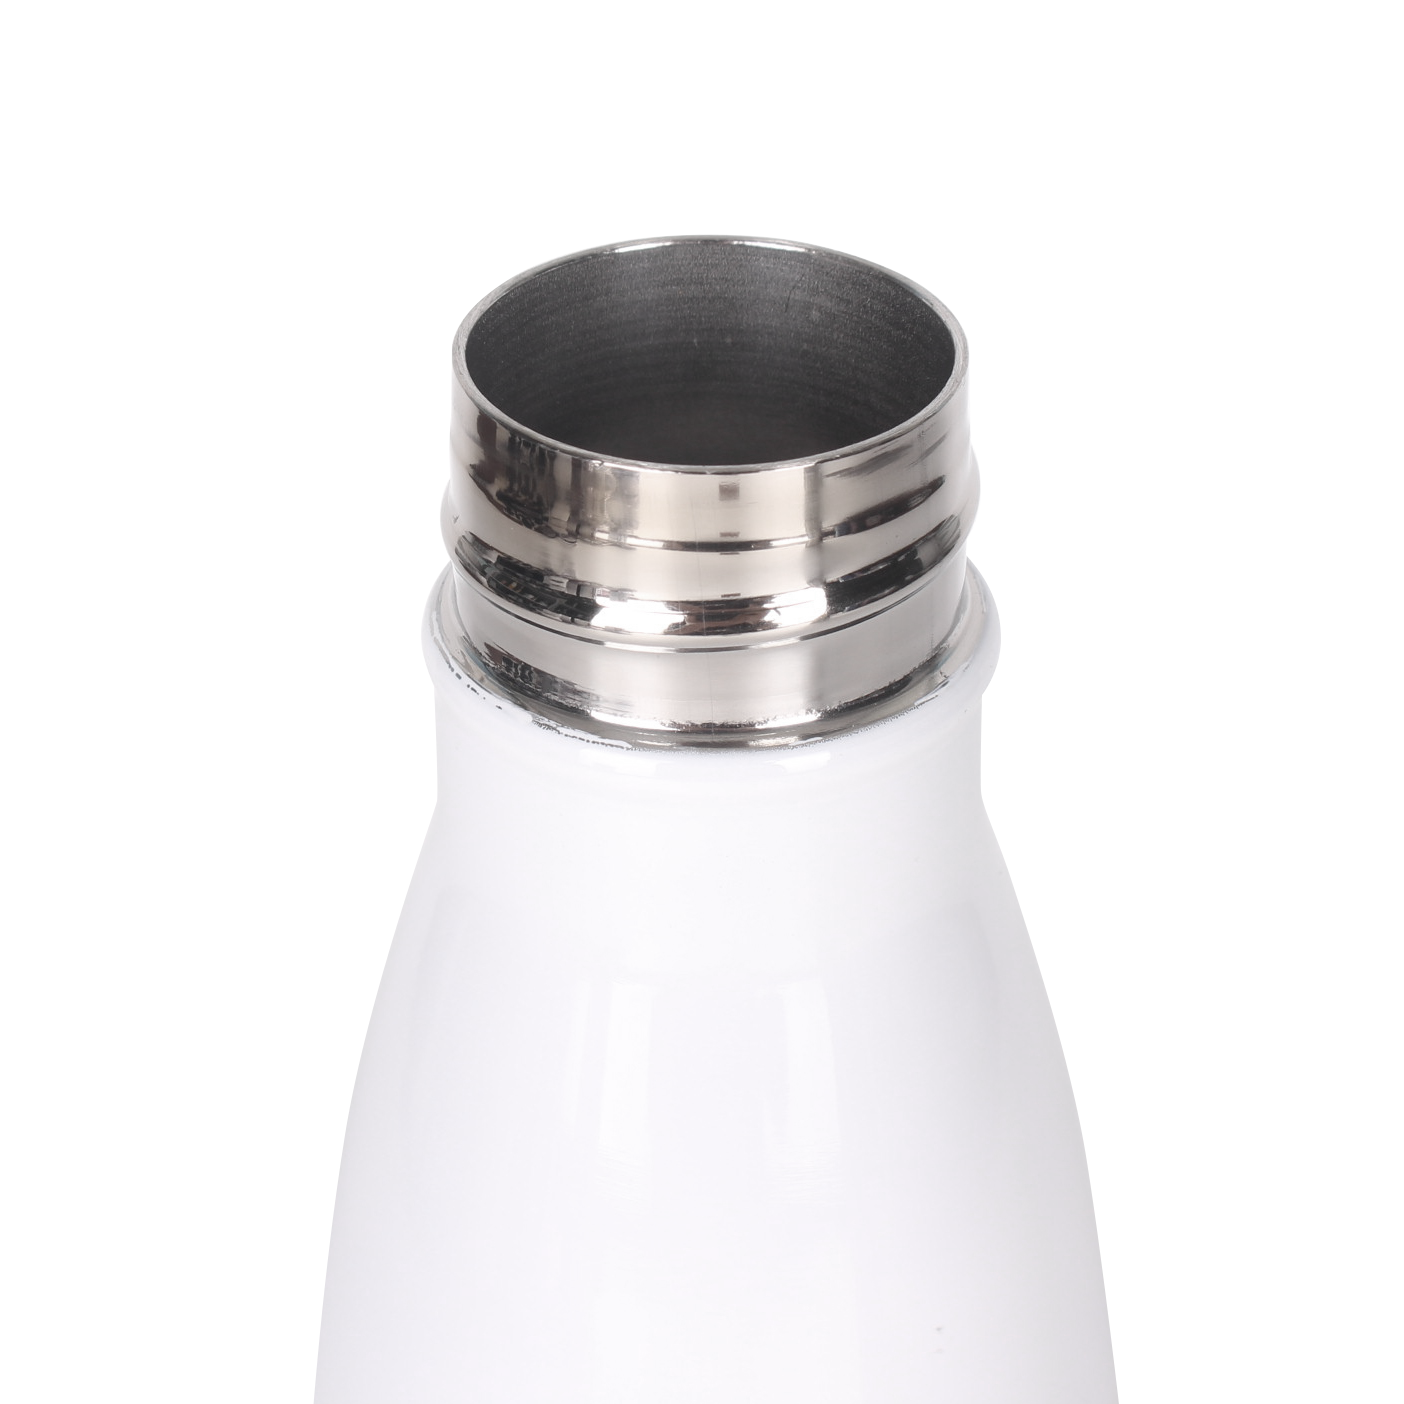 Botella Térmica Personalizada de Acero Inoxidable - Desde 4.29 €